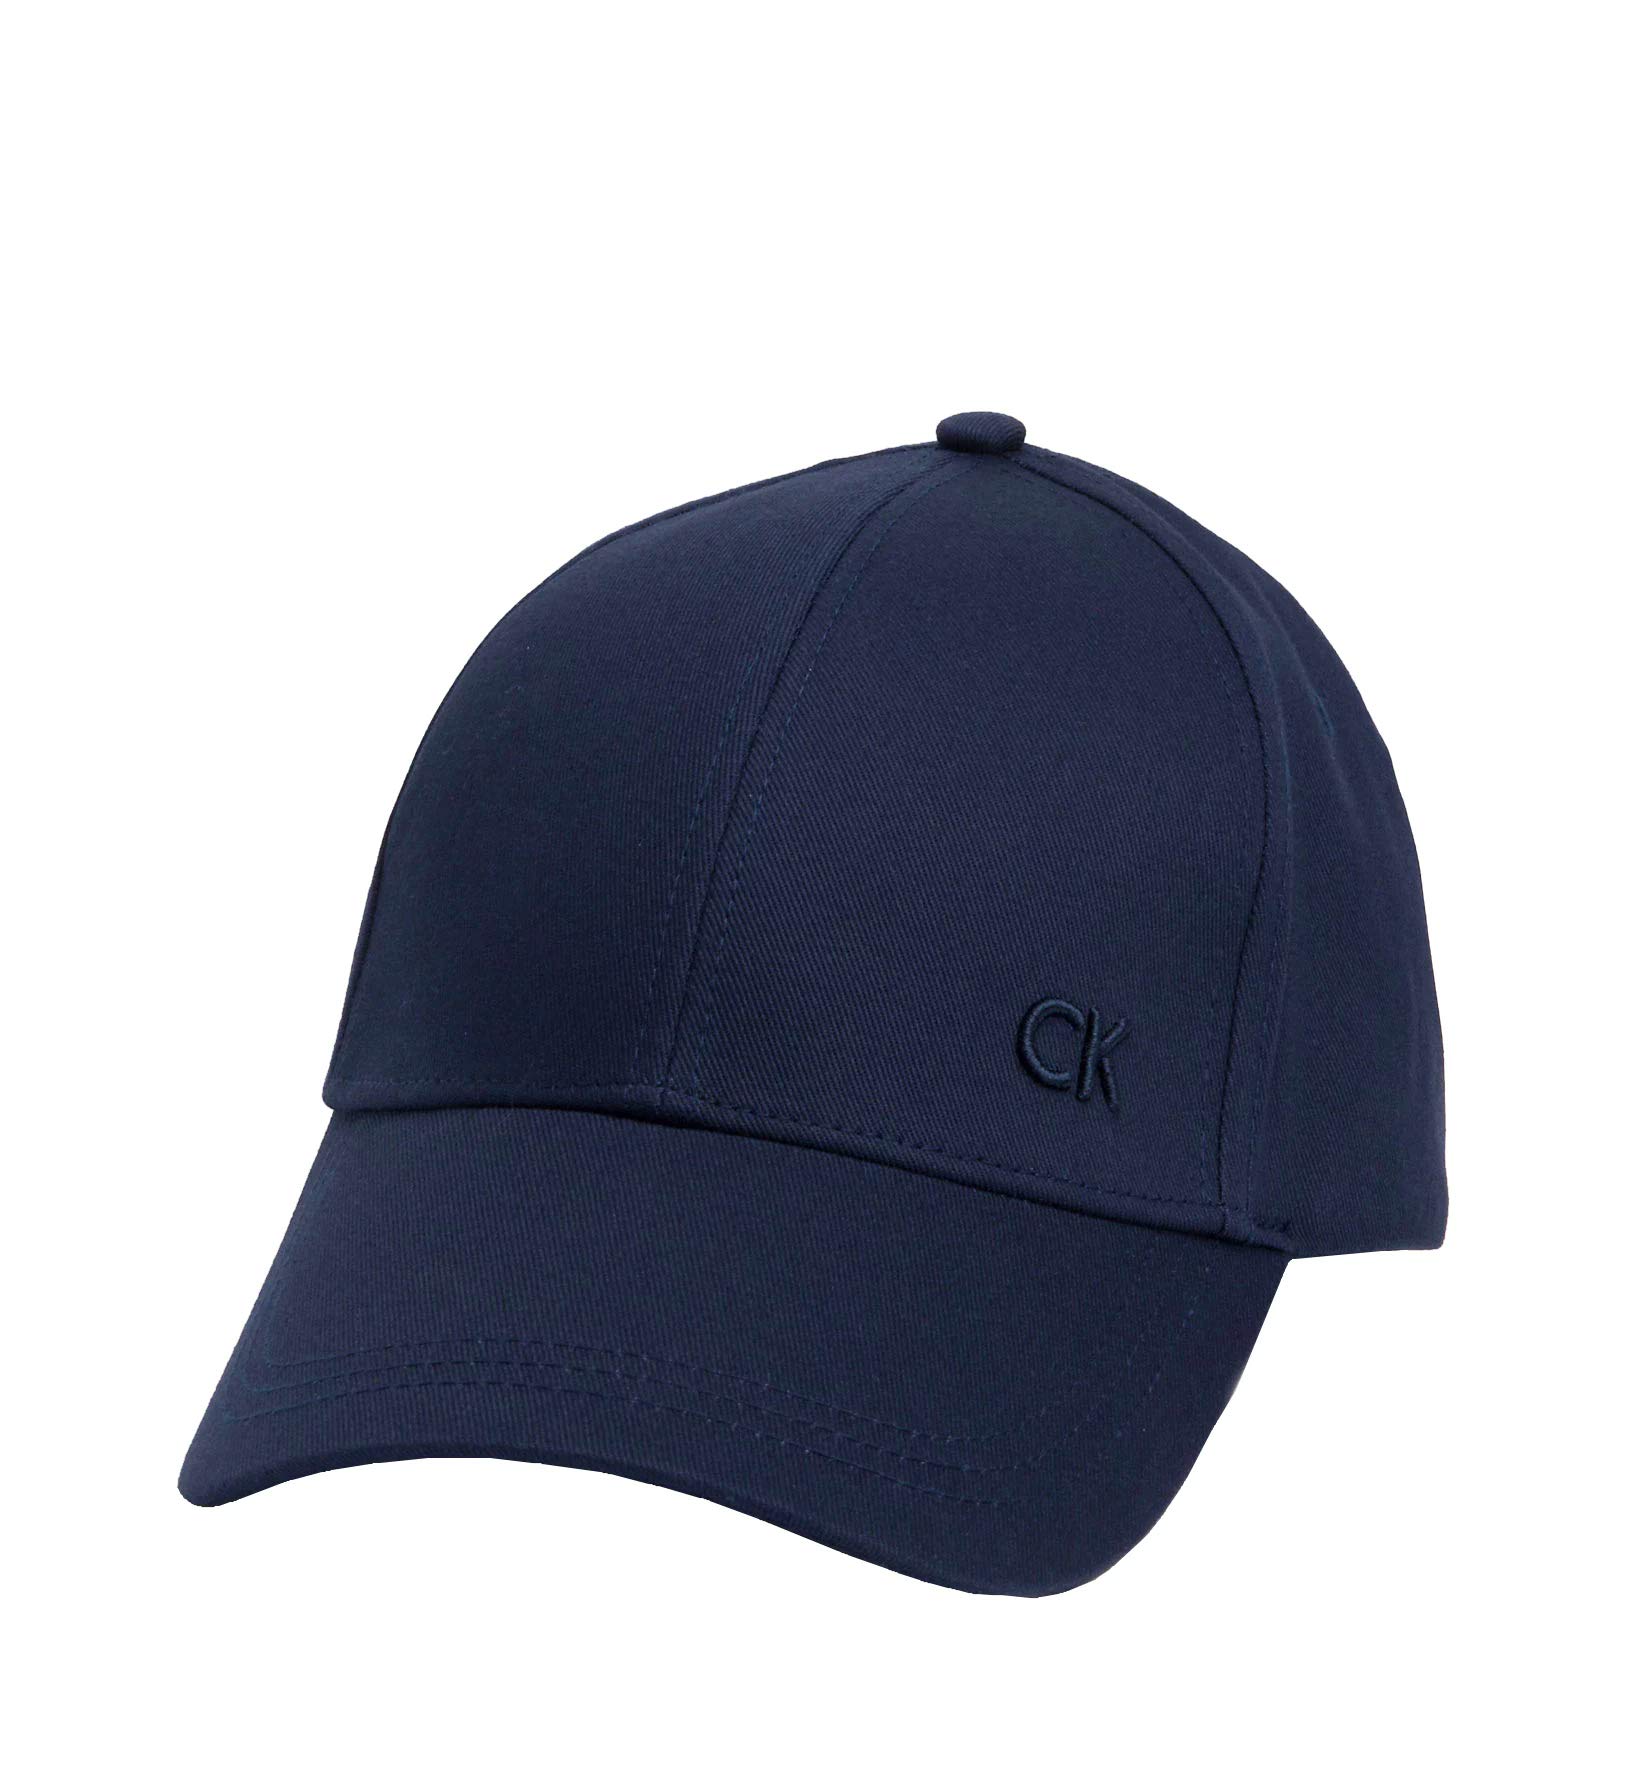 Calvin Klein Herren Cap Basecap, Blau (Navy), Einheitsgröße